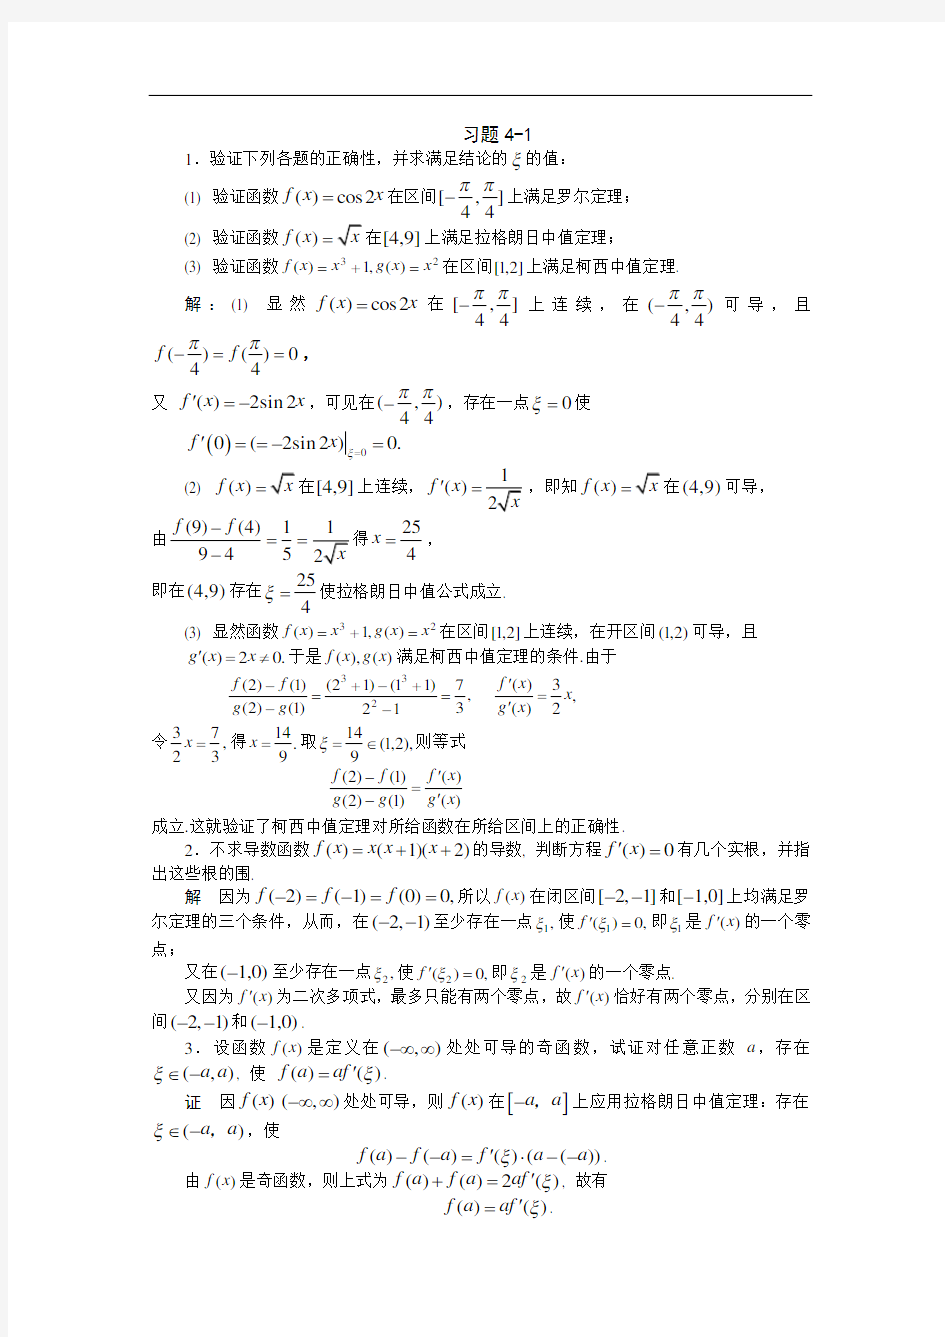 高等数学习题详细讲解_第4章_微分中值定理与导数的应用